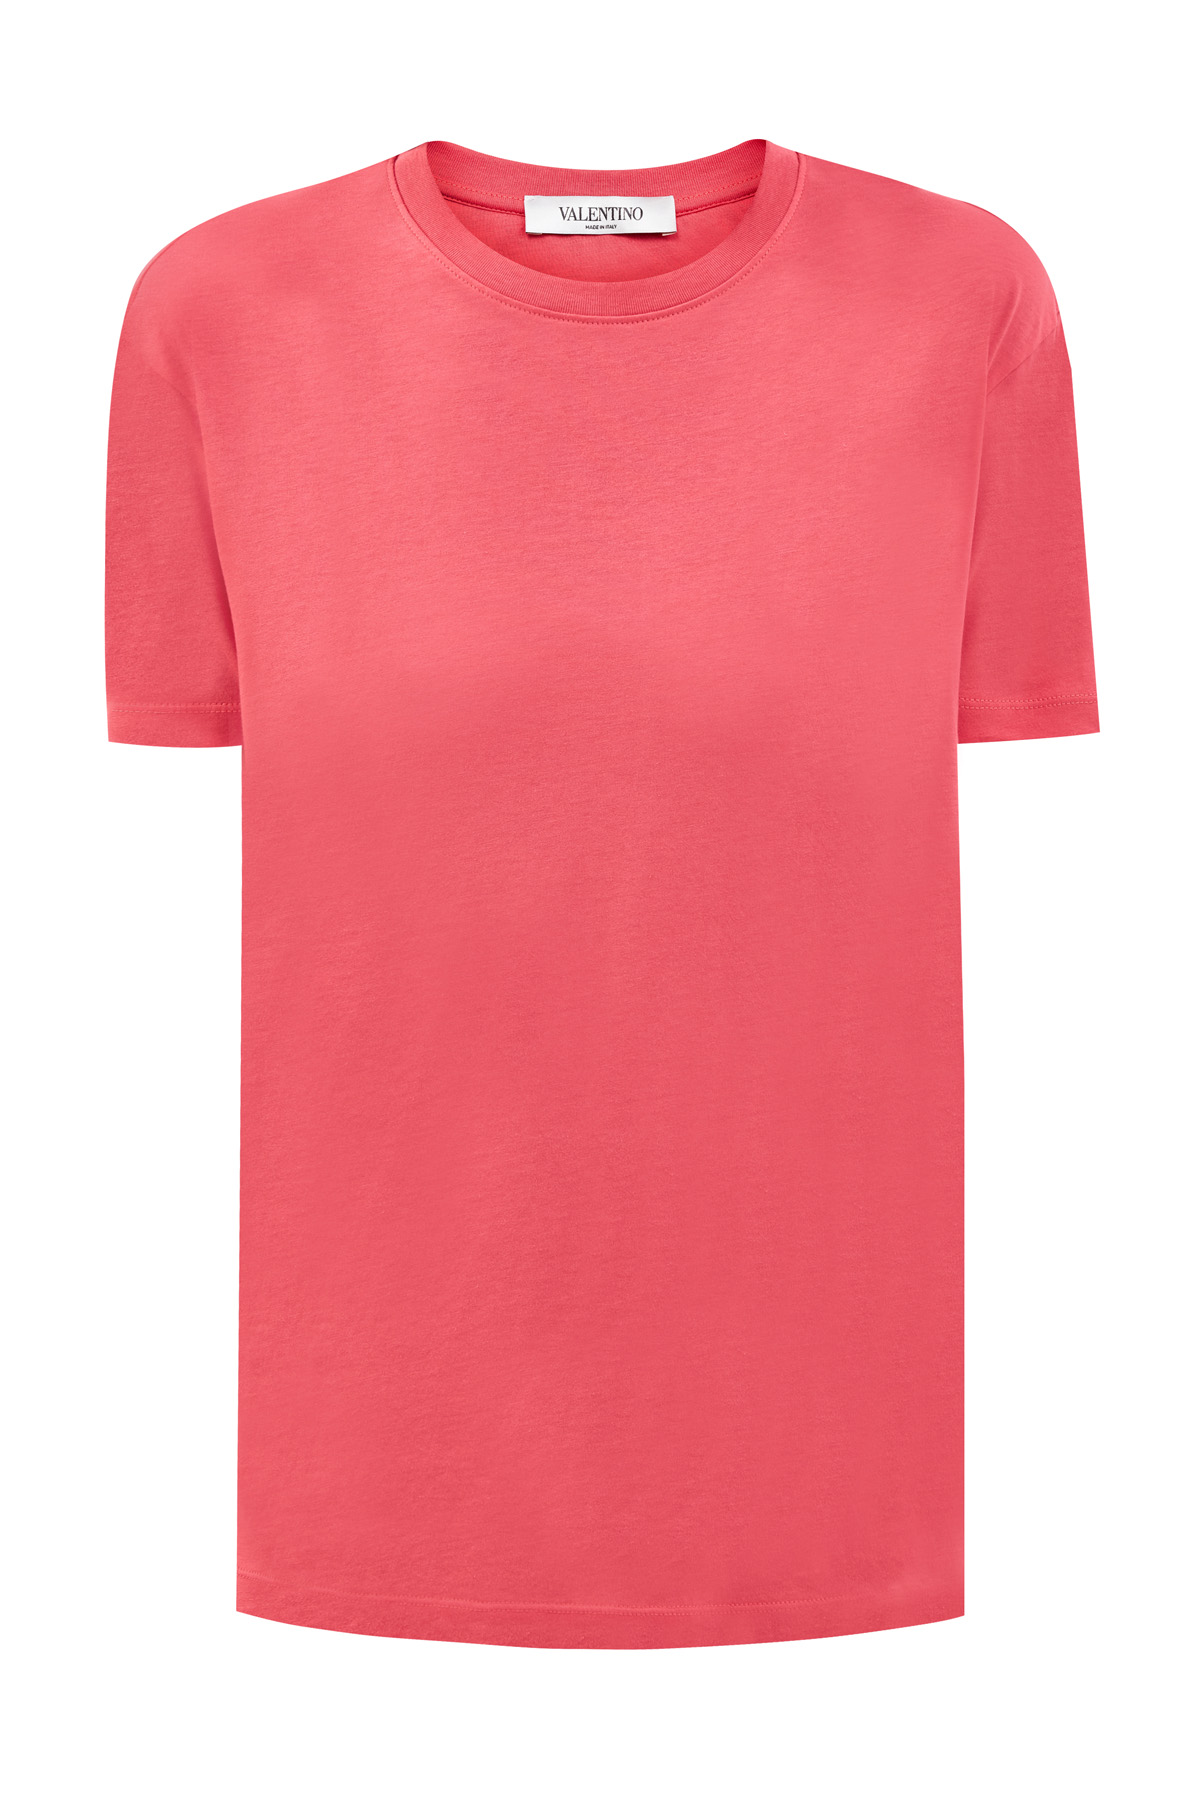 Удлиненная футболка из хлопкового джерси с логотипом VALENTINO, цвет розовый, размер 38;40;42 - фото 1